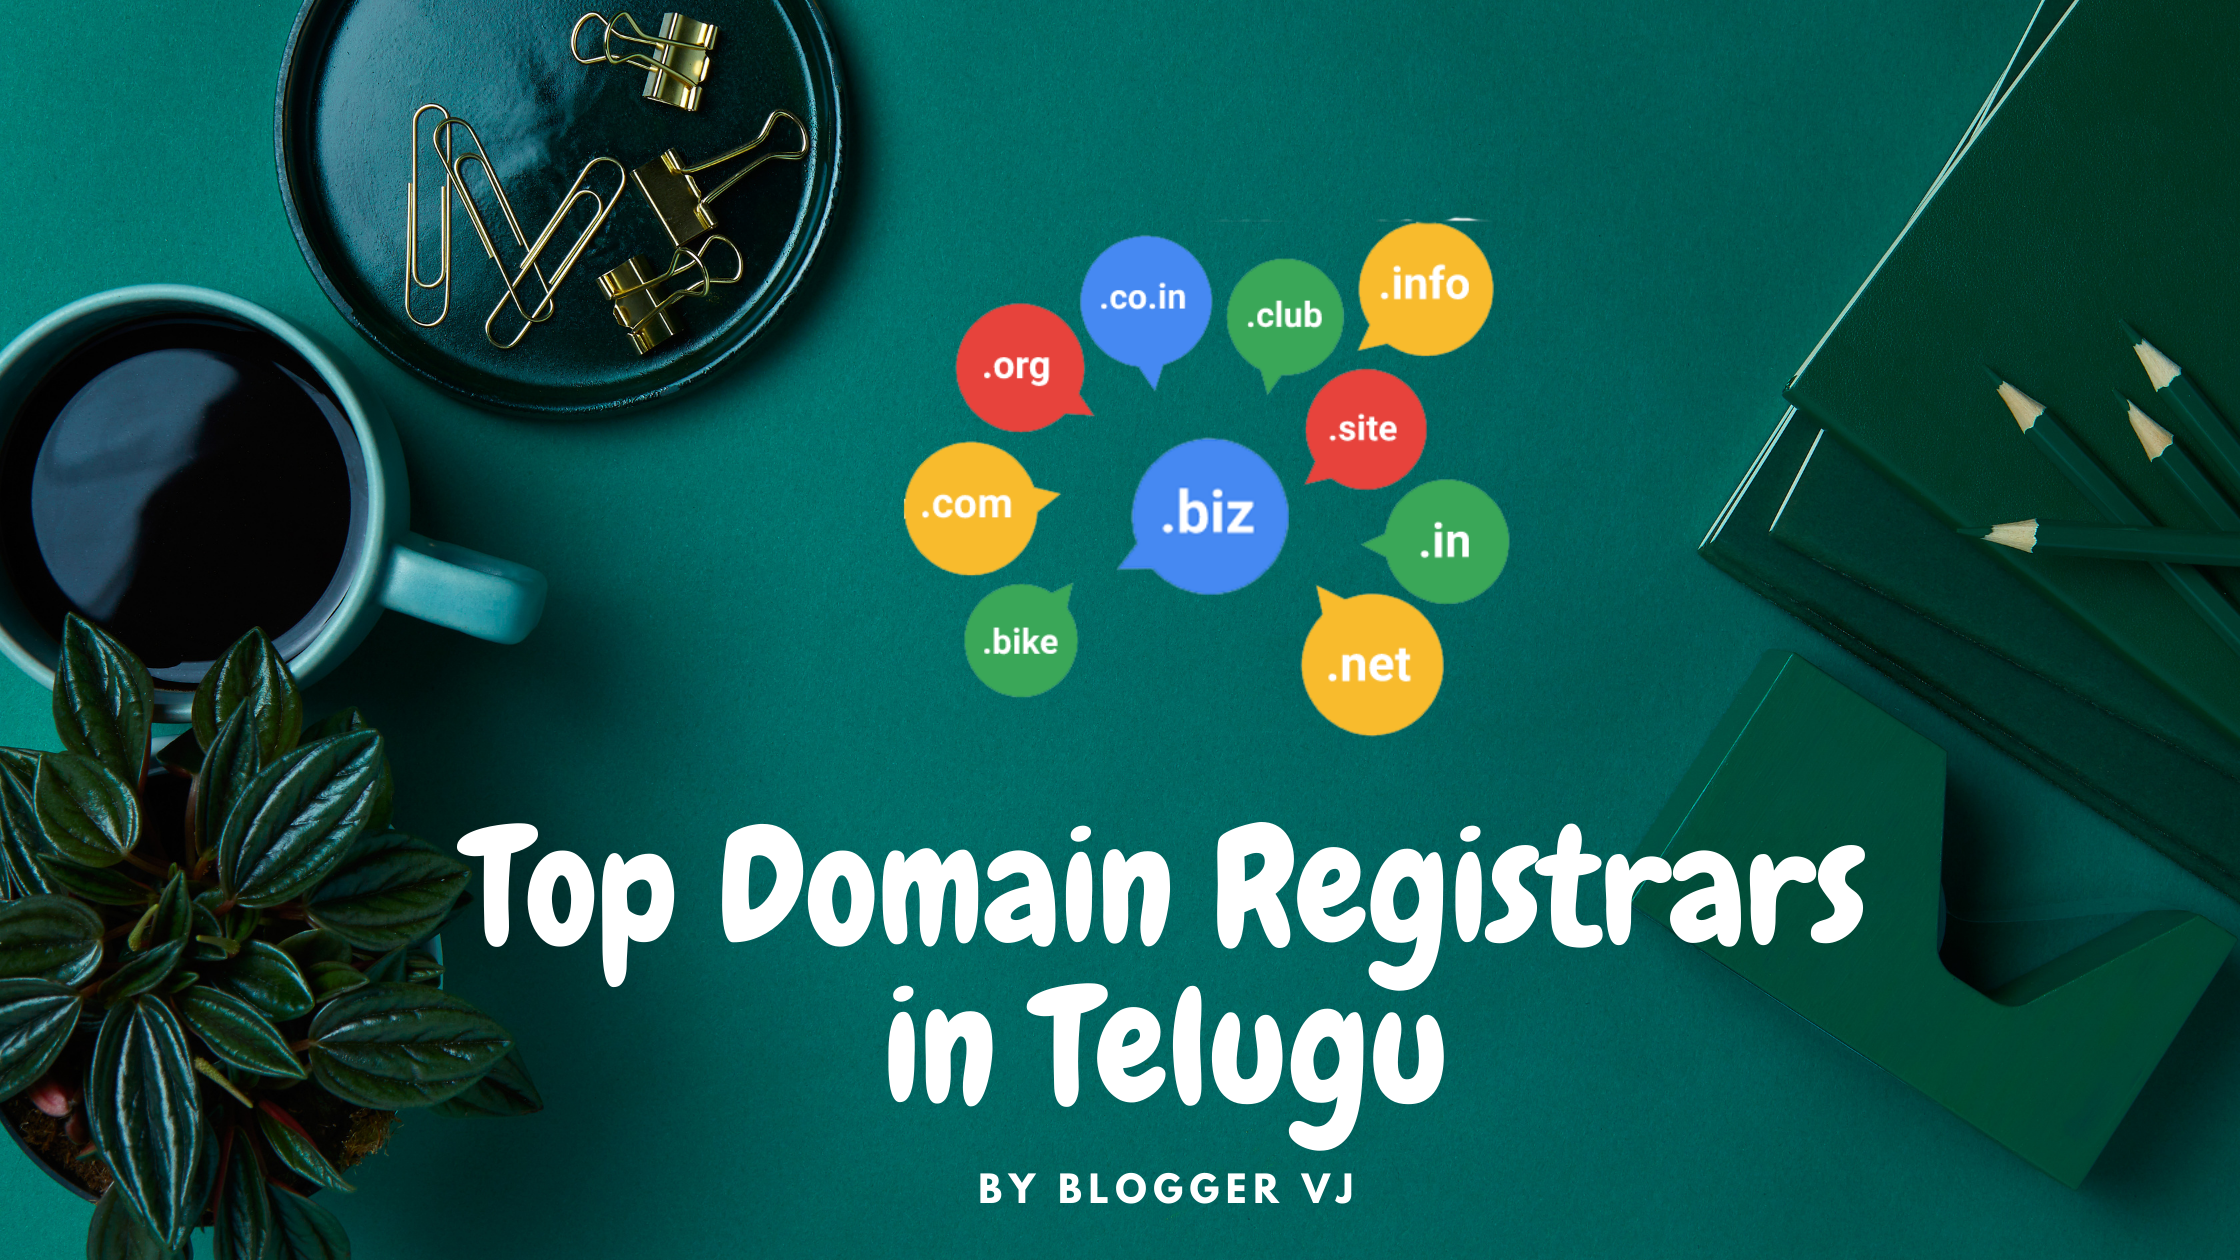 Top Domain Registrars in Telugu